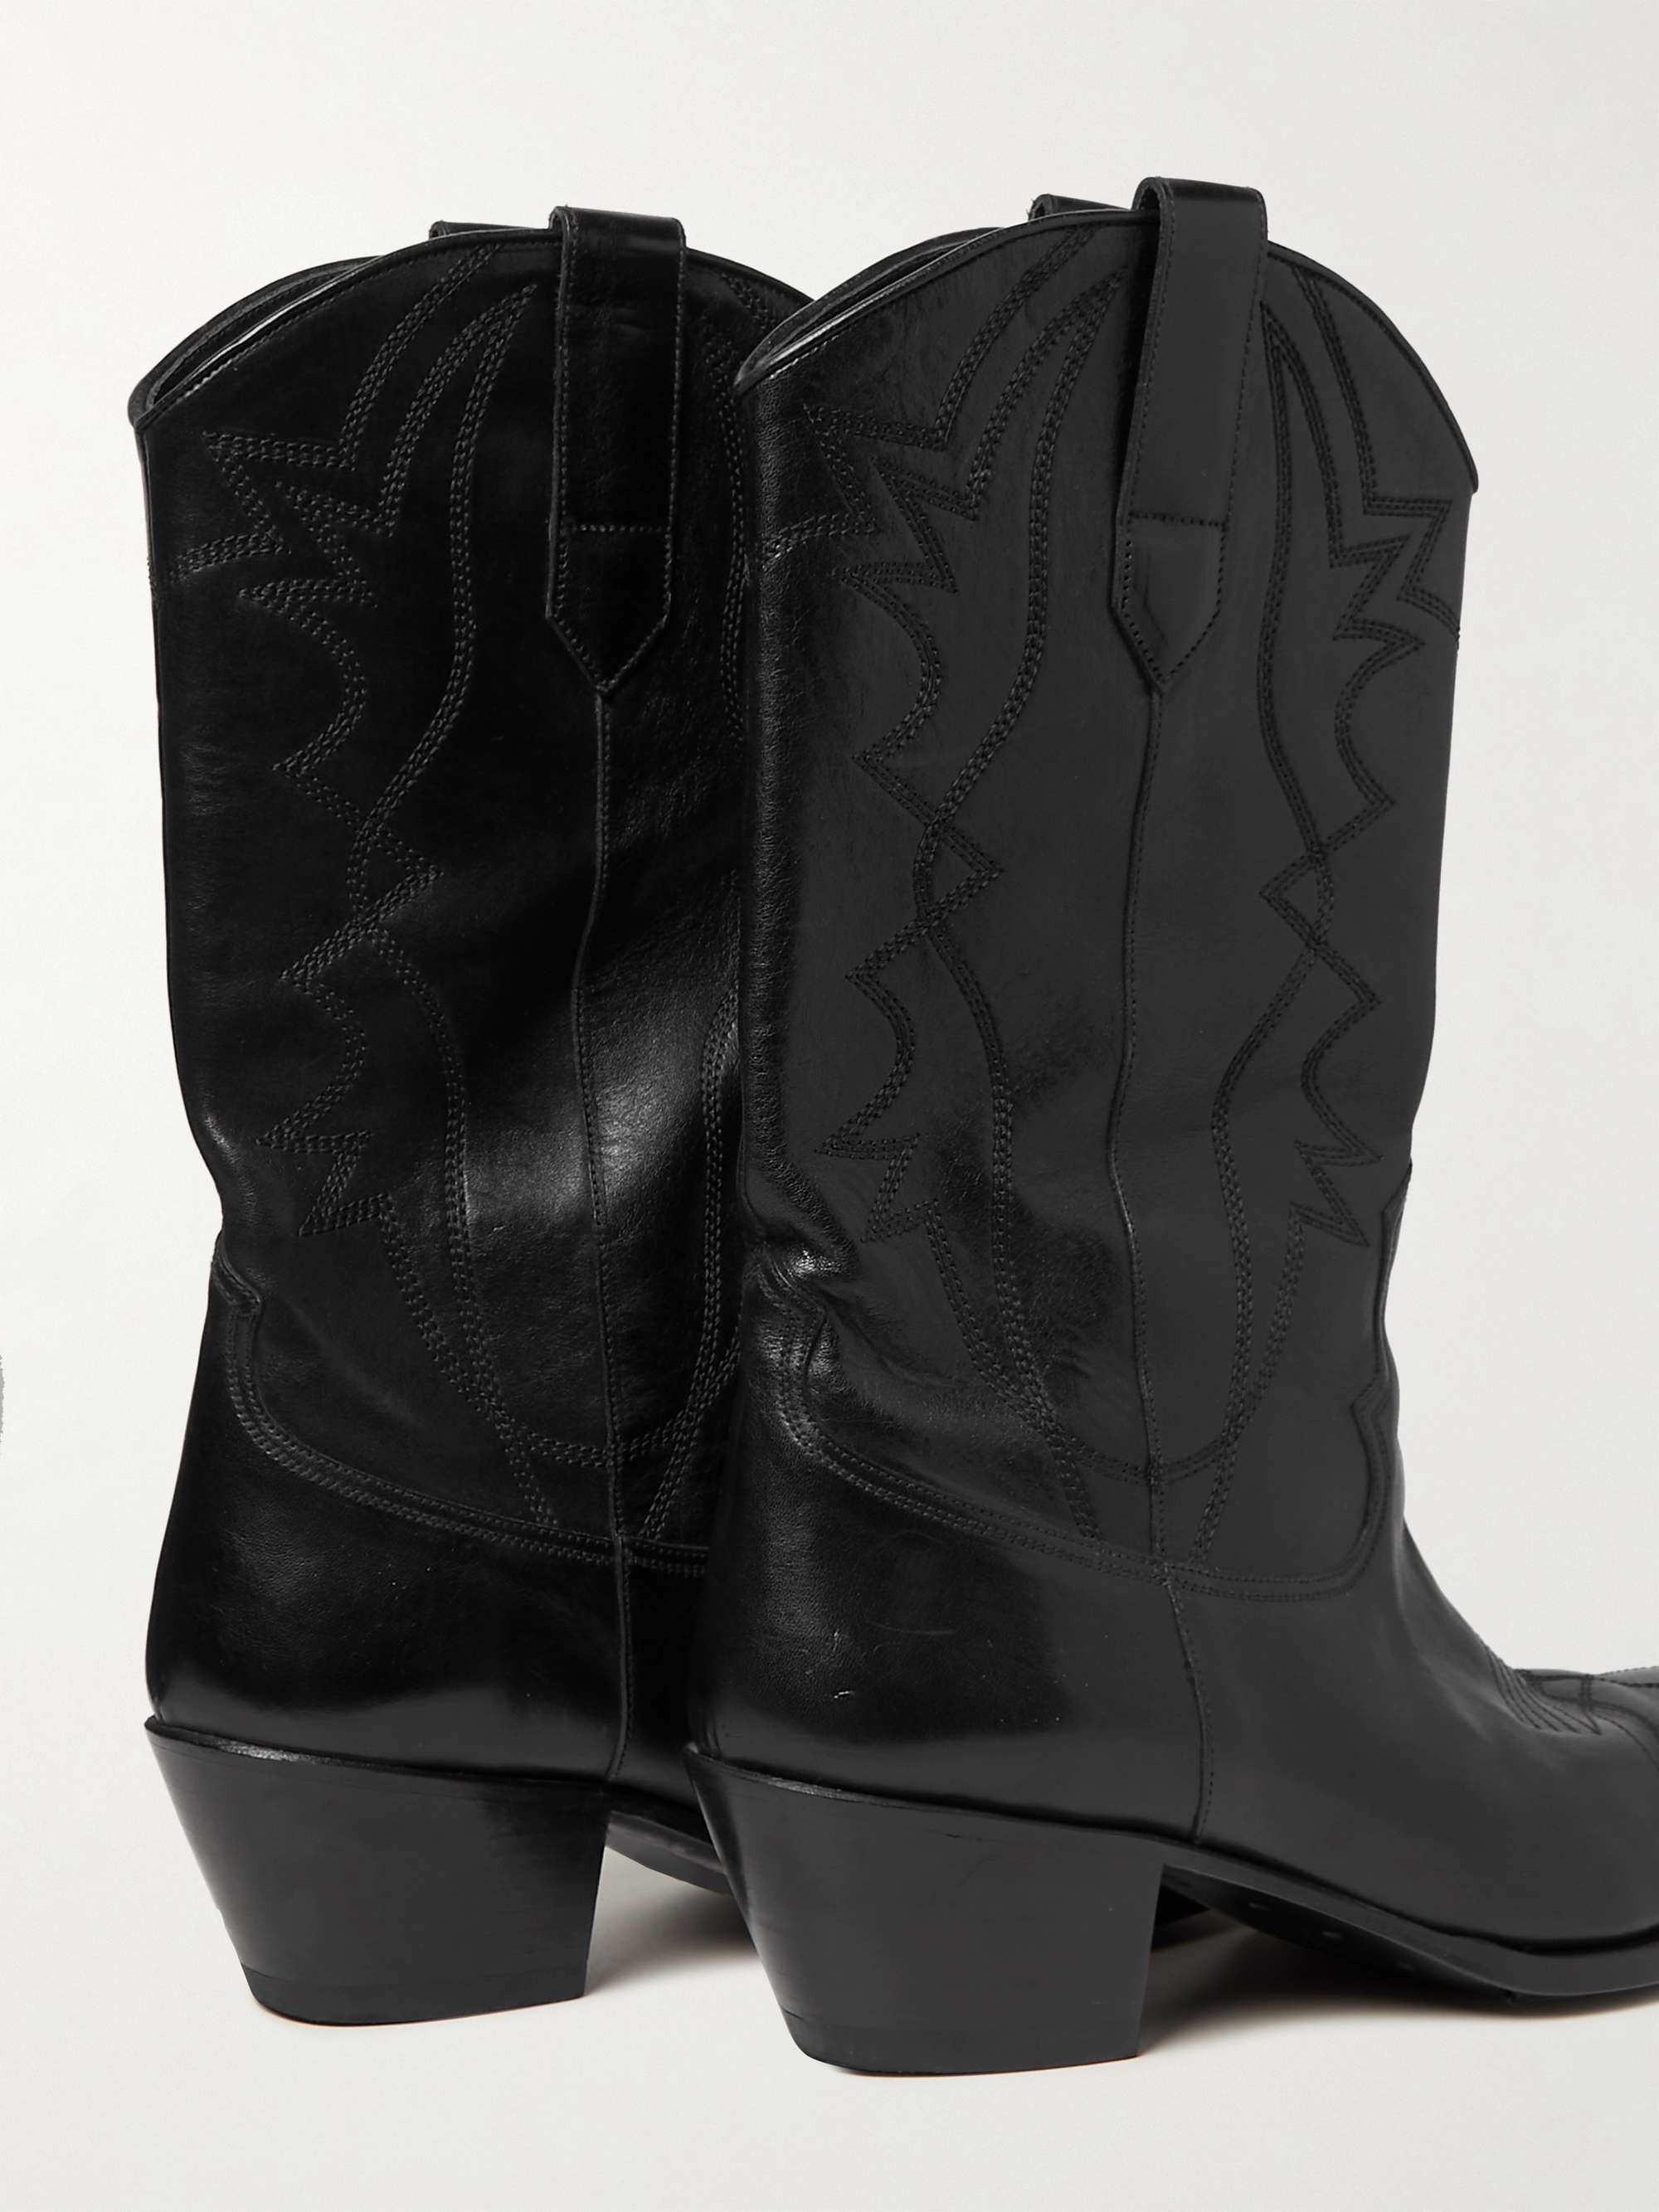 CELINE HOMME Embellished Leather Western Boots for Men | MR PORTER